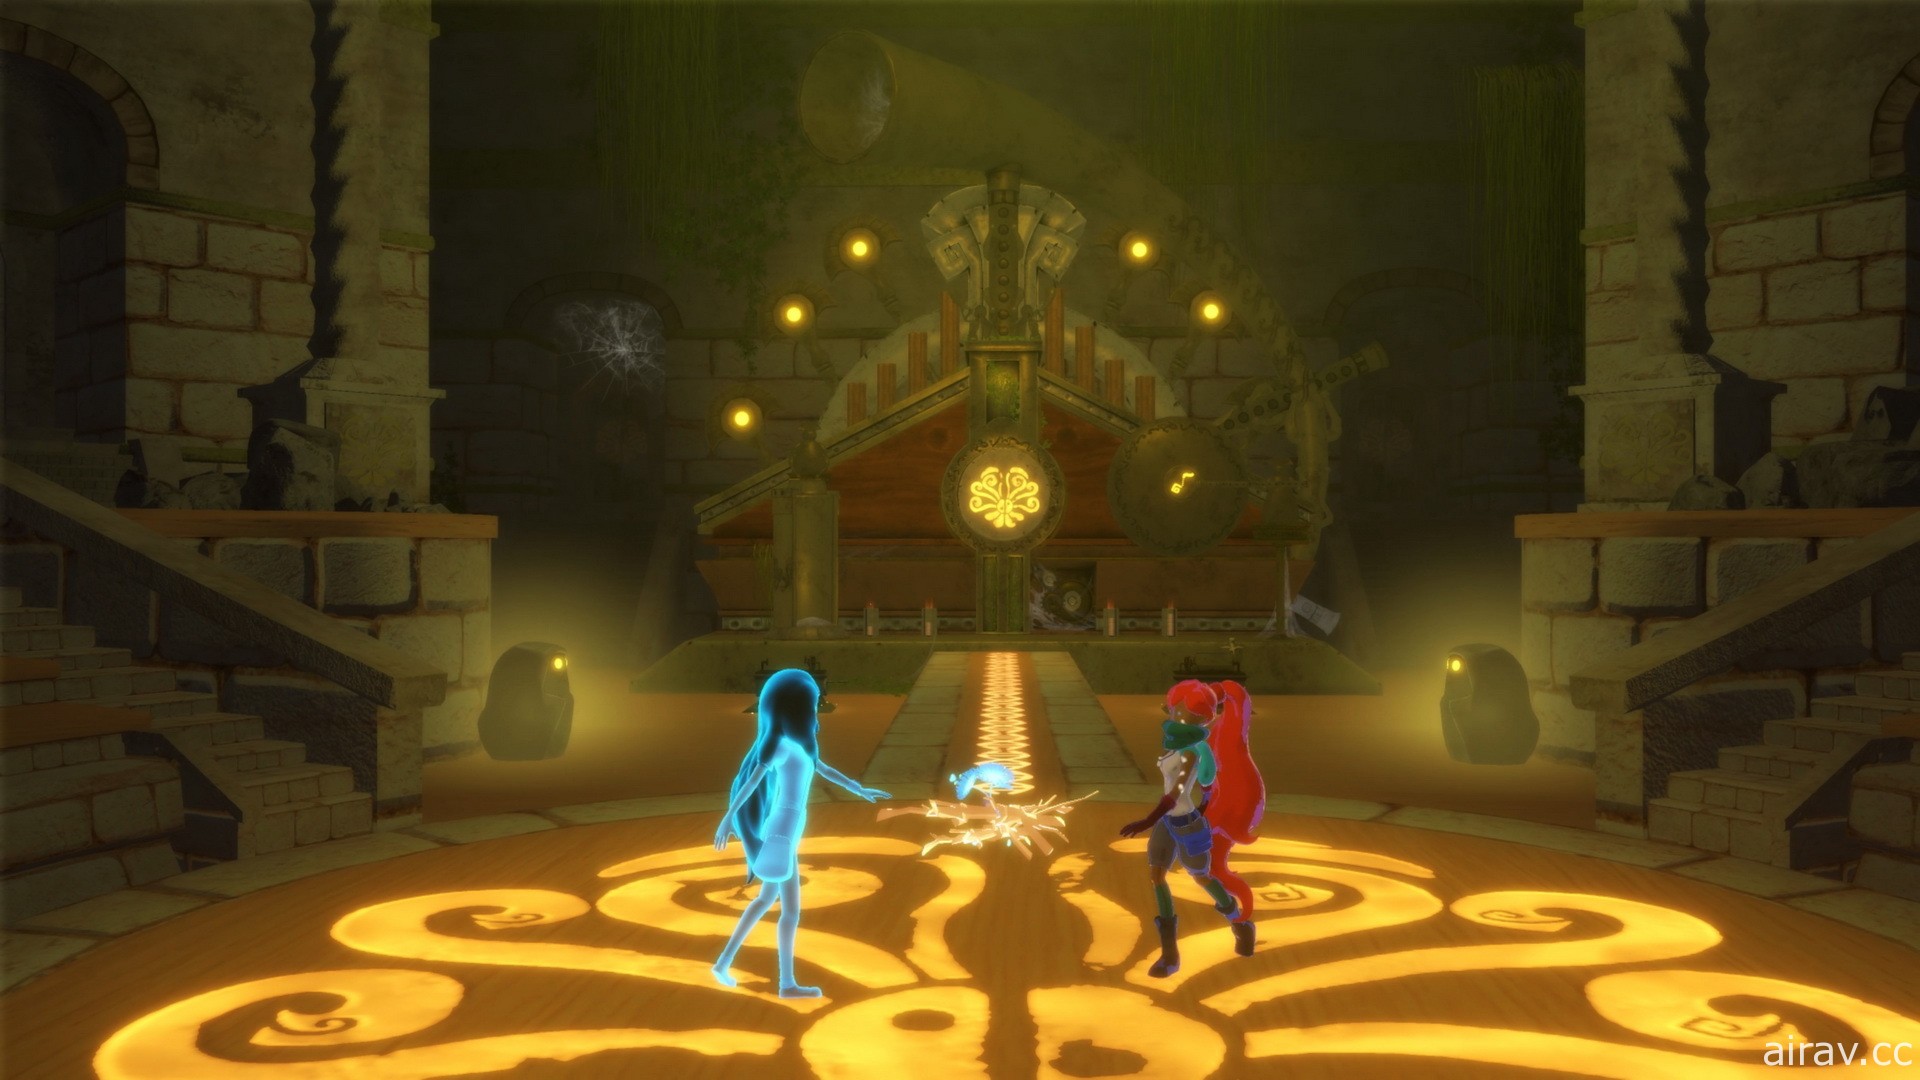 探索解谜游戏《Aliisha》融入“音乐”类谜题 考验两位玩家间的默契